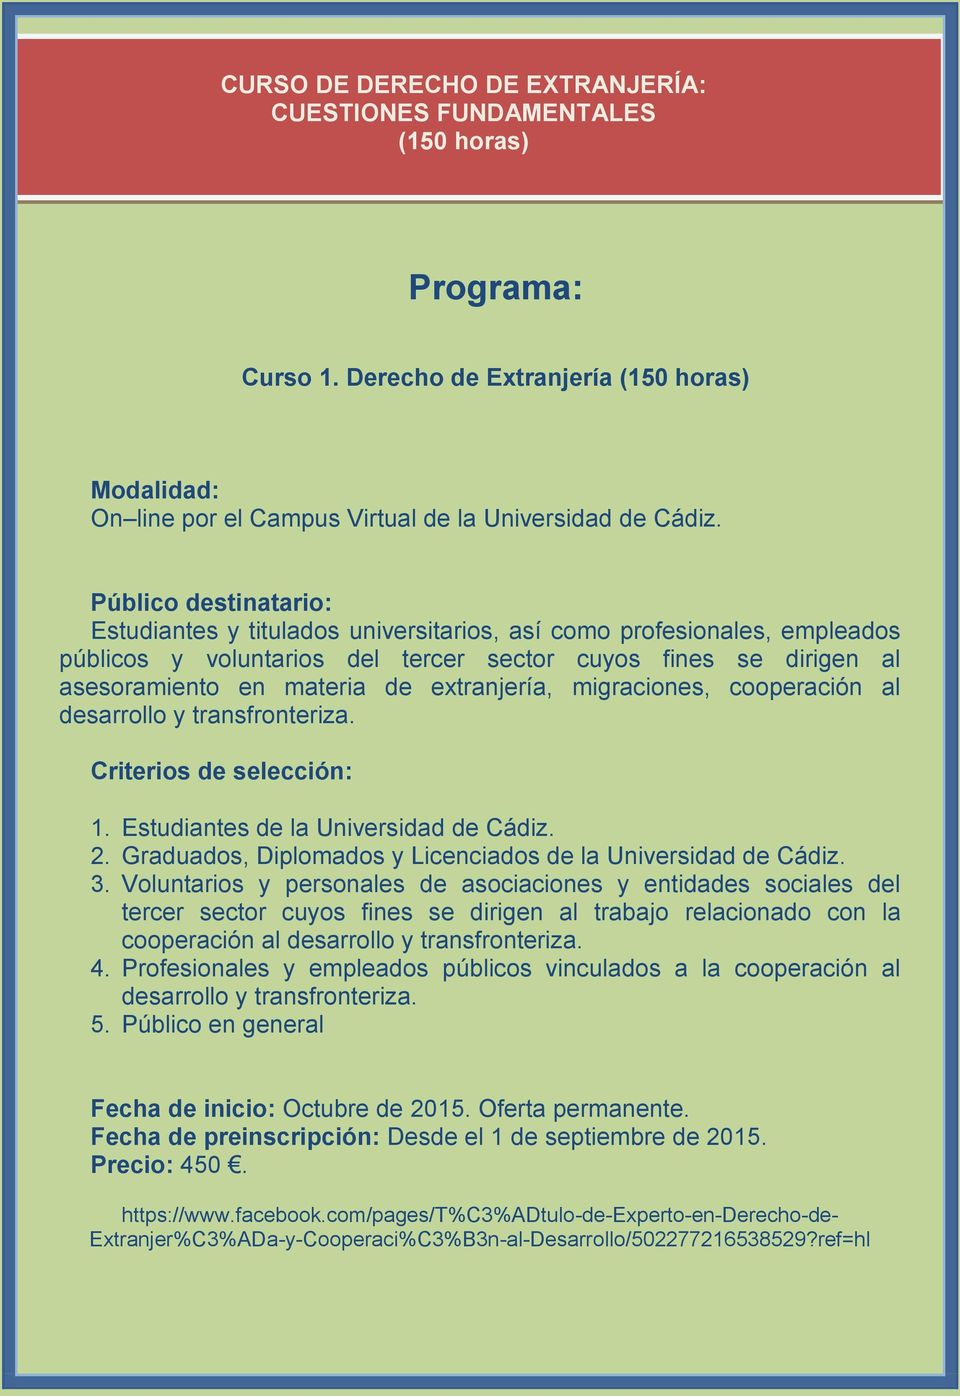 extranjería, migraciones, cooperación al Criterios de selección: 1. Estudiantes de la Universidad de Cádiz. 2. Graduados, Diplomados y Licenciados de la Universidad de Cádiz. 3.